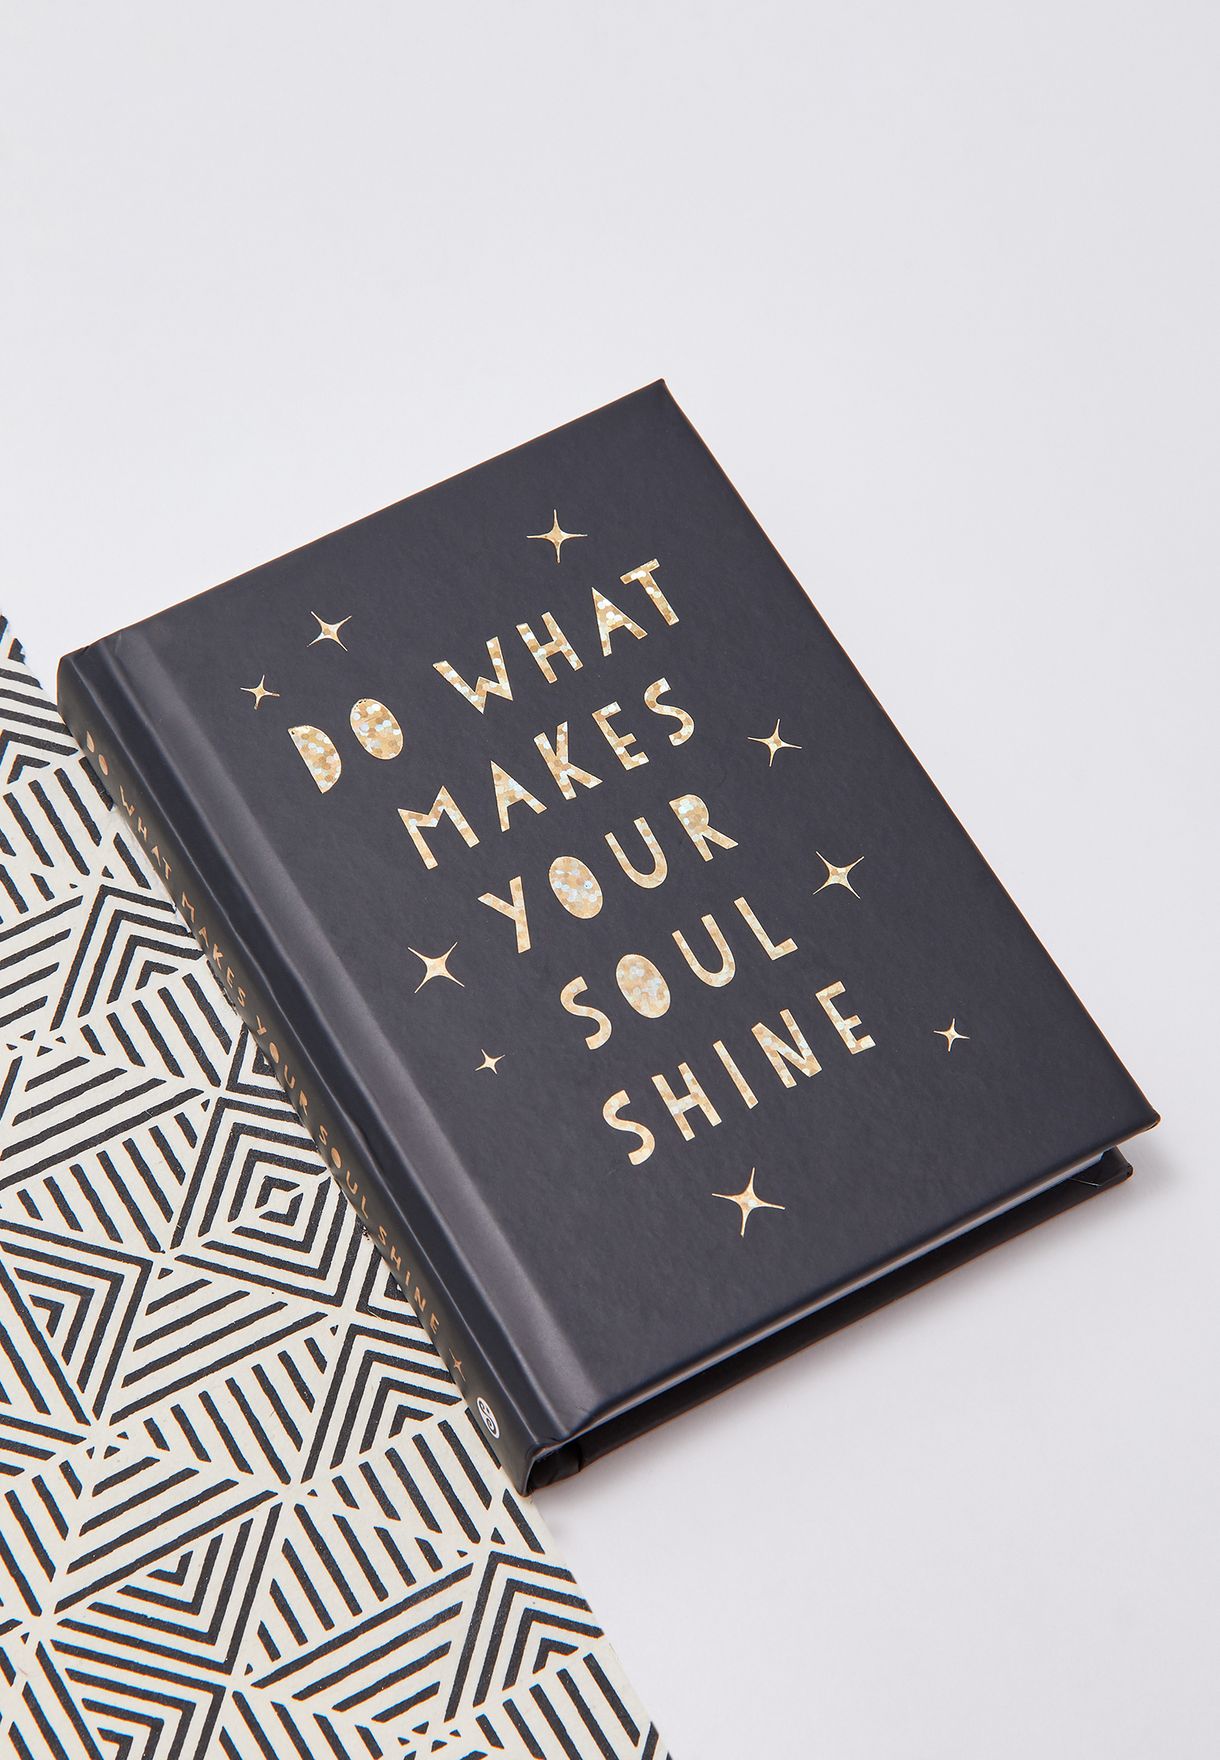 كتاب "Do What Makes Your Soul Shine"